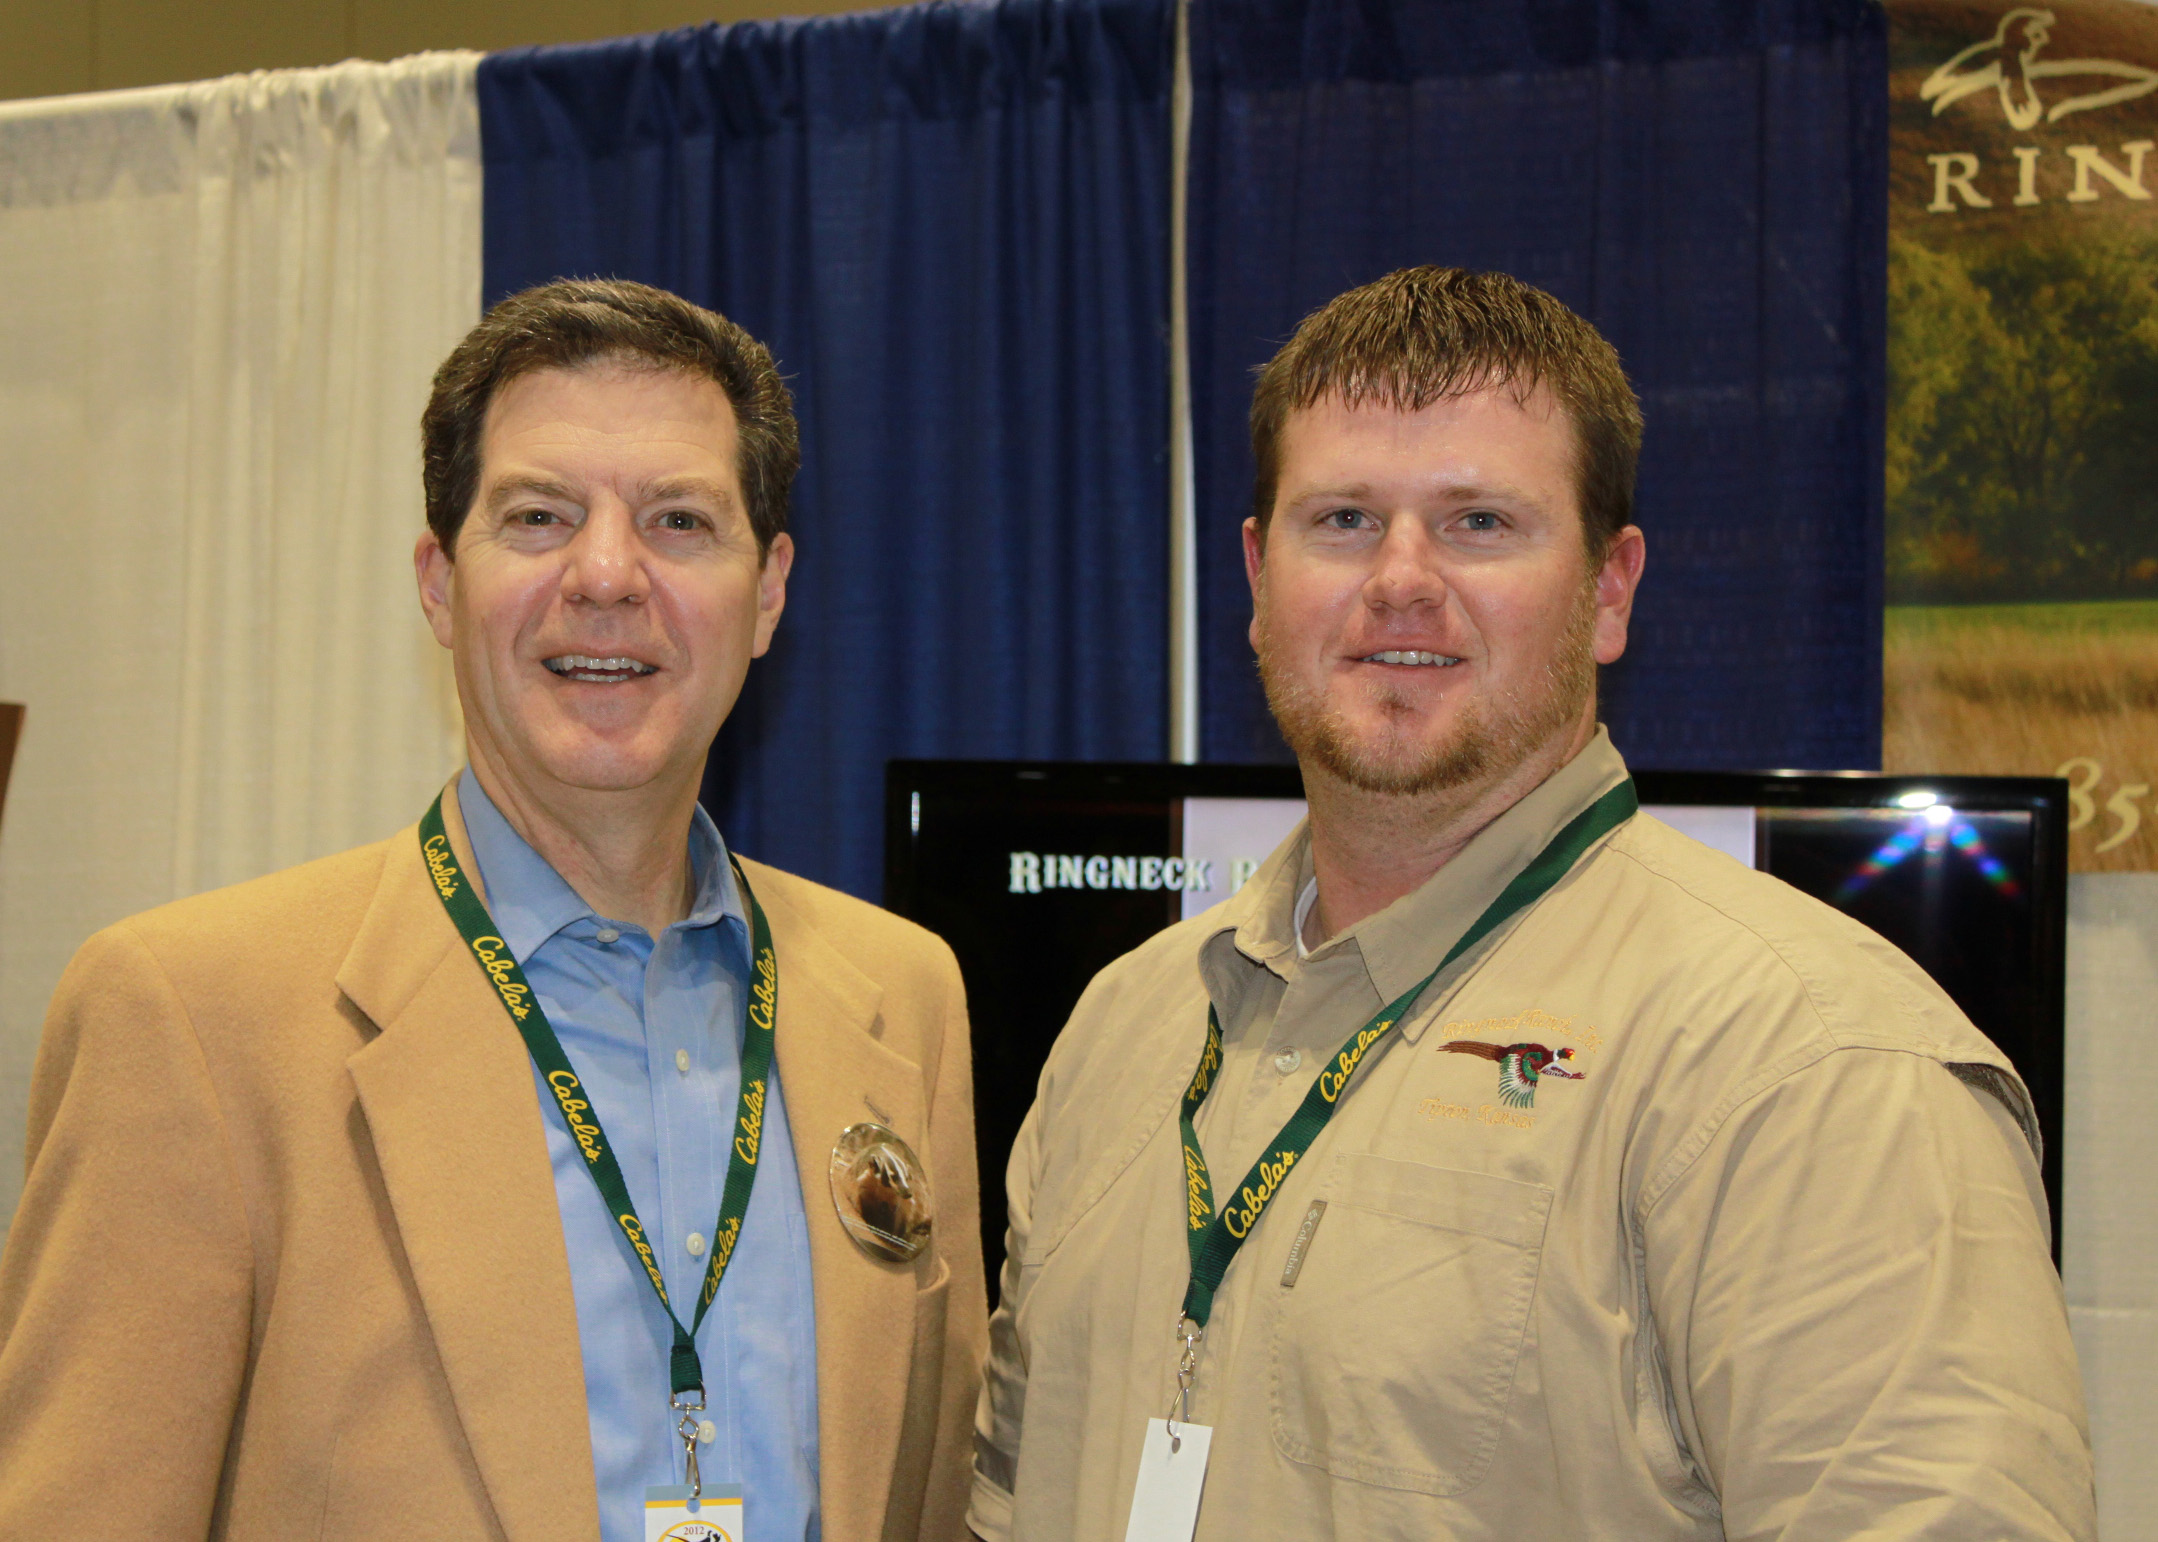 Kansas Governor Sam Brownback & RIngneck Operations Manager Zach Miller